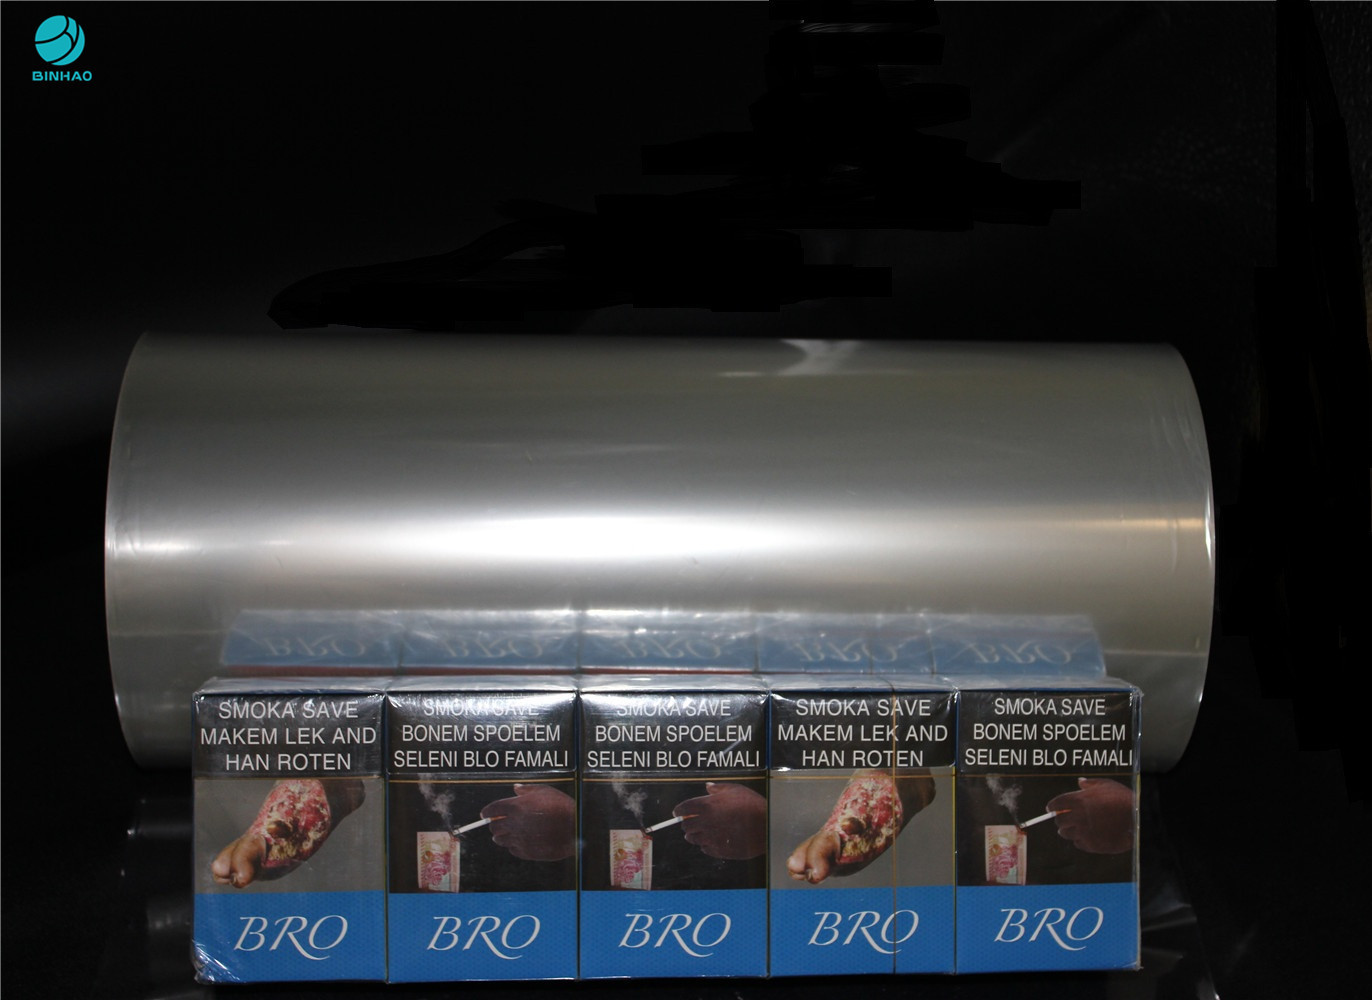 película de empaquetado transparente del PVC del grueso de 25 micrones para el empaquetado desnudo de la caja del cigarrillo